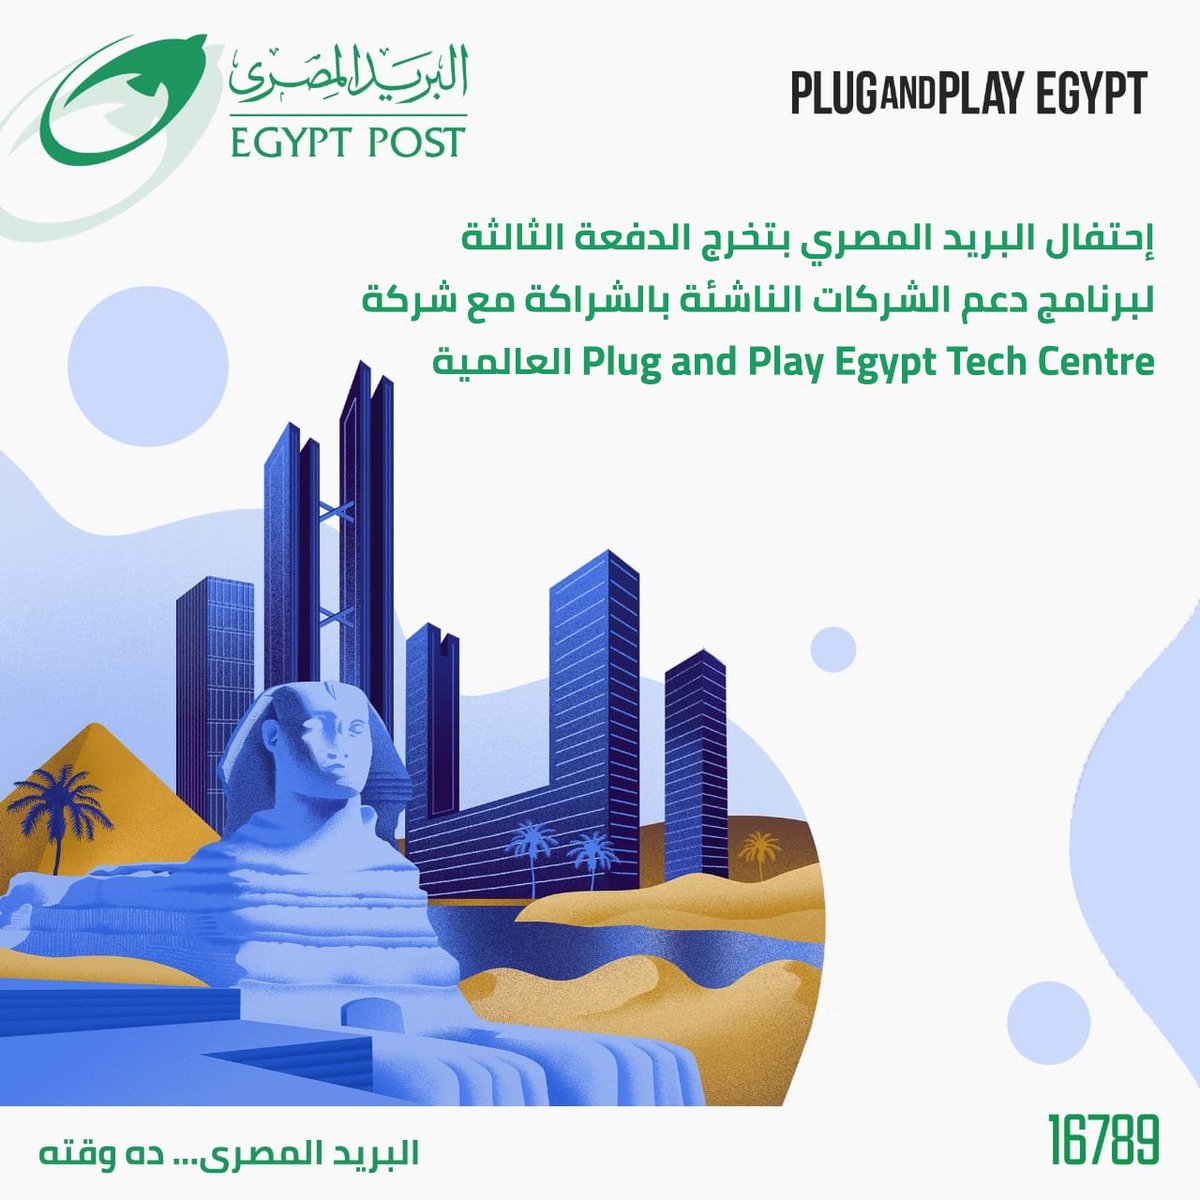 إحتفال البريد المصري بتخرج الدفعة الثالثة لبرنامج دعم الشركات الناشئة بالشراكة مع شركة Plug and Play Egypt Tech Center العالمية. #البريد_المصرى #ده_وقته